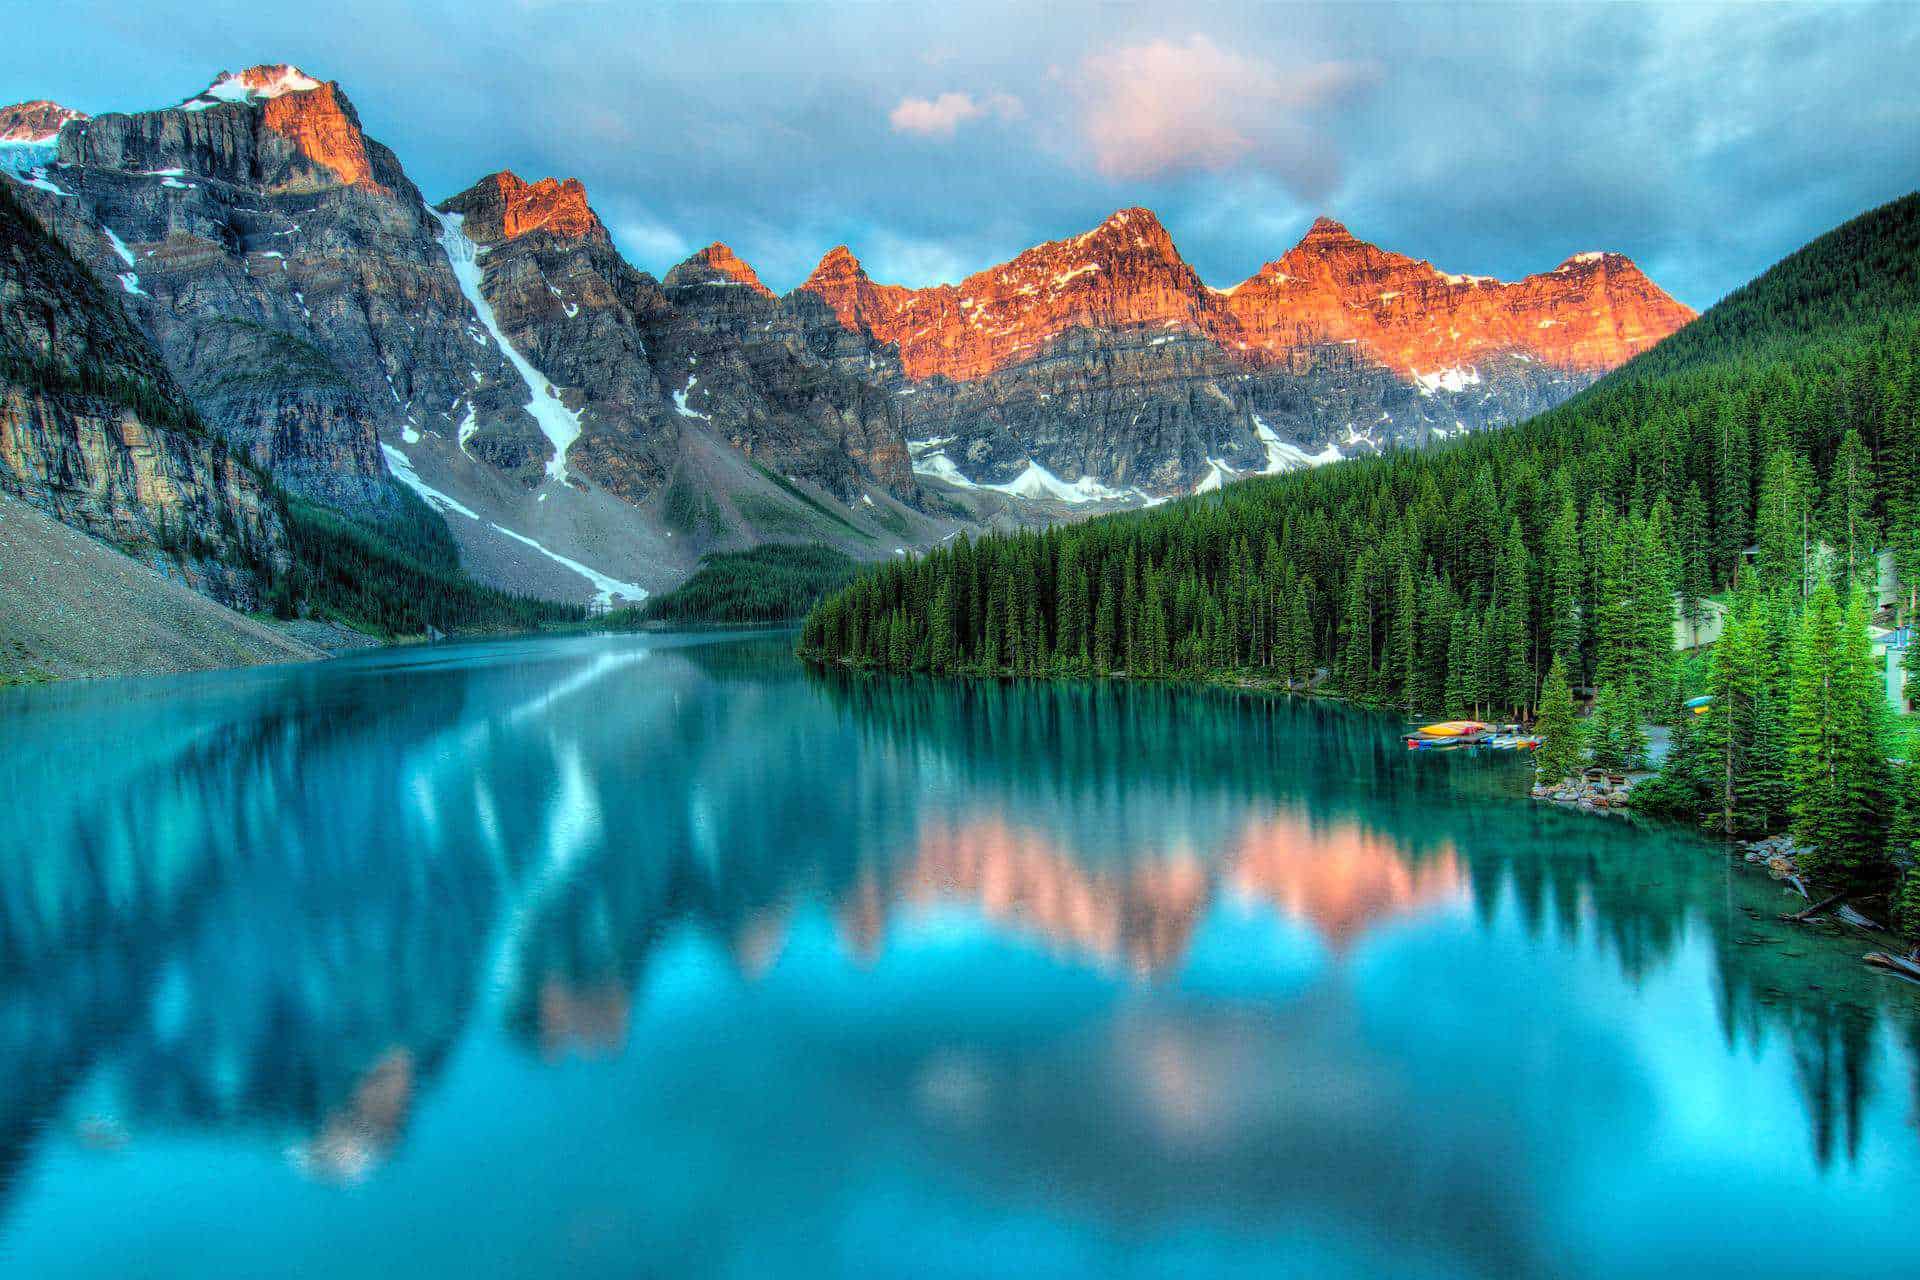 Lake in Alberta, Canada